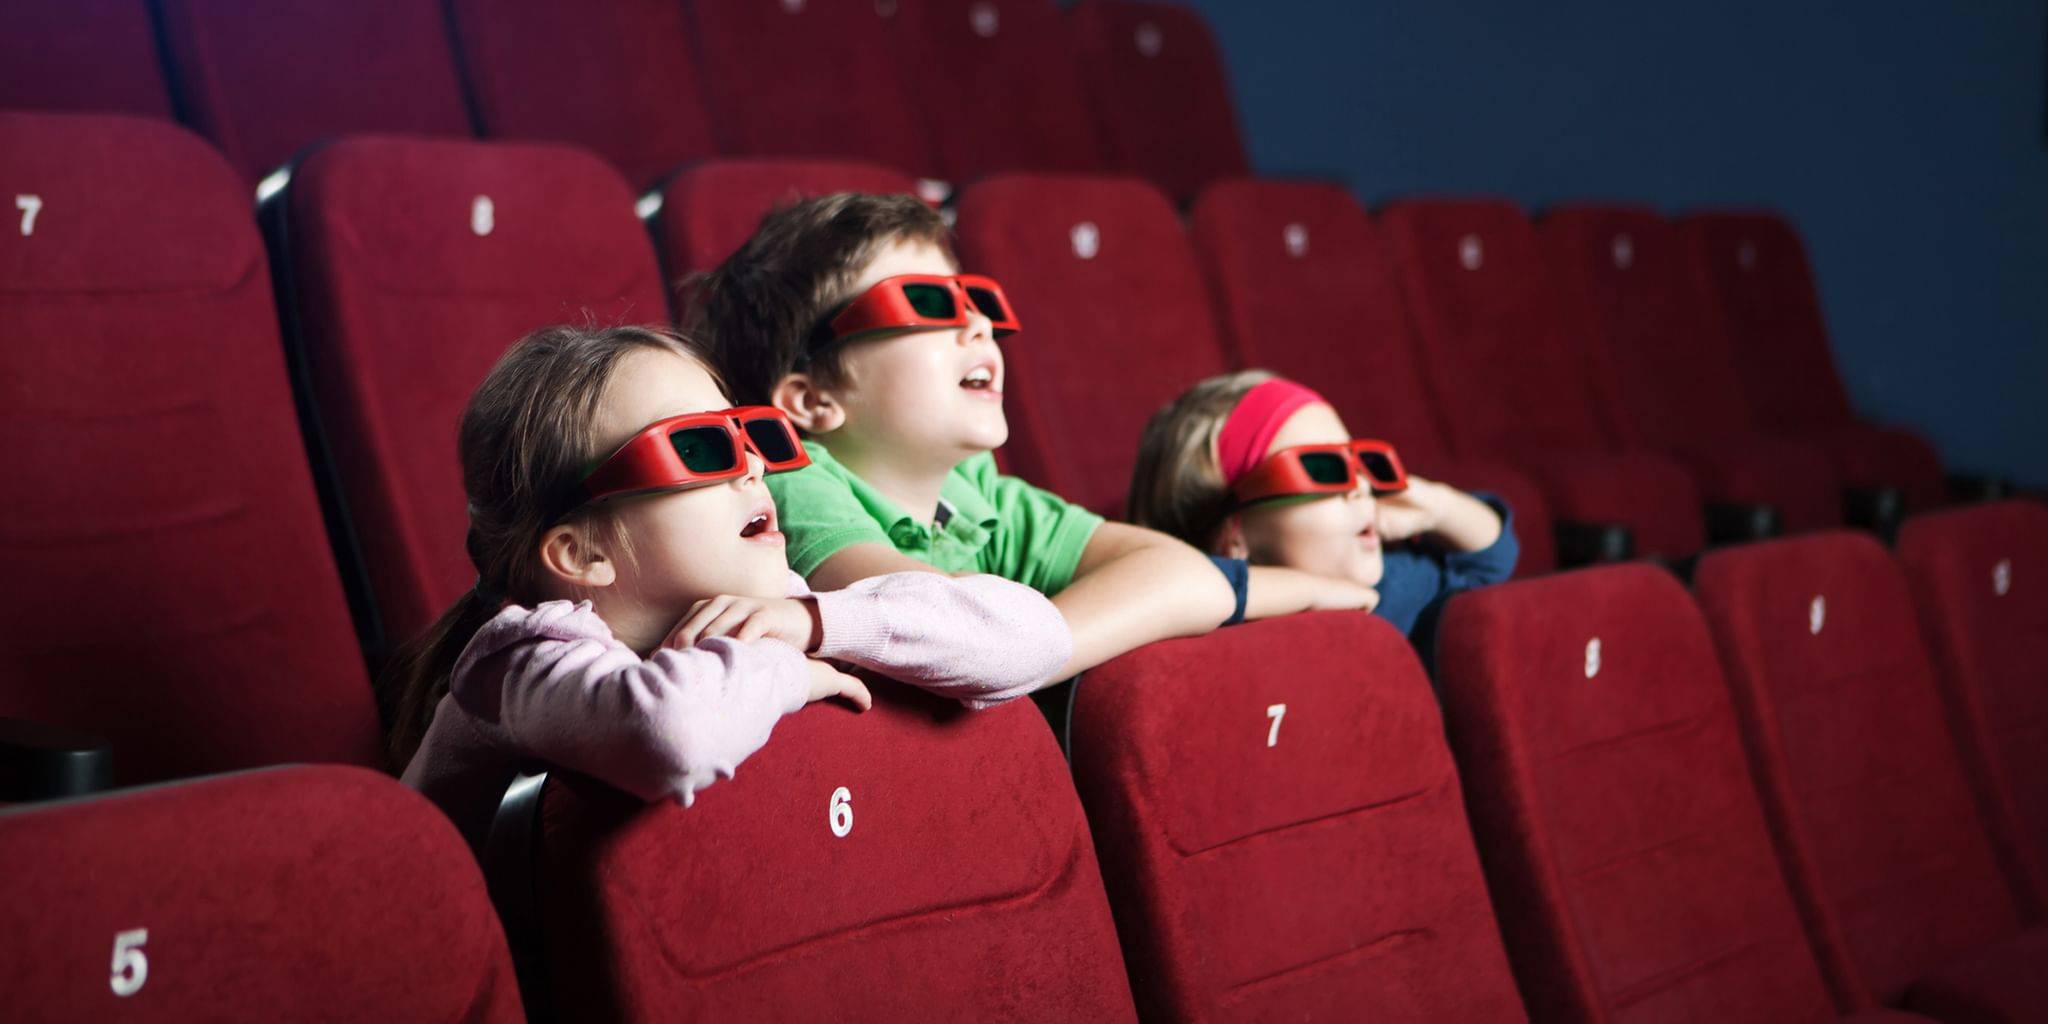 Со скольки лет нужно платить за ребенка в кинотеатре